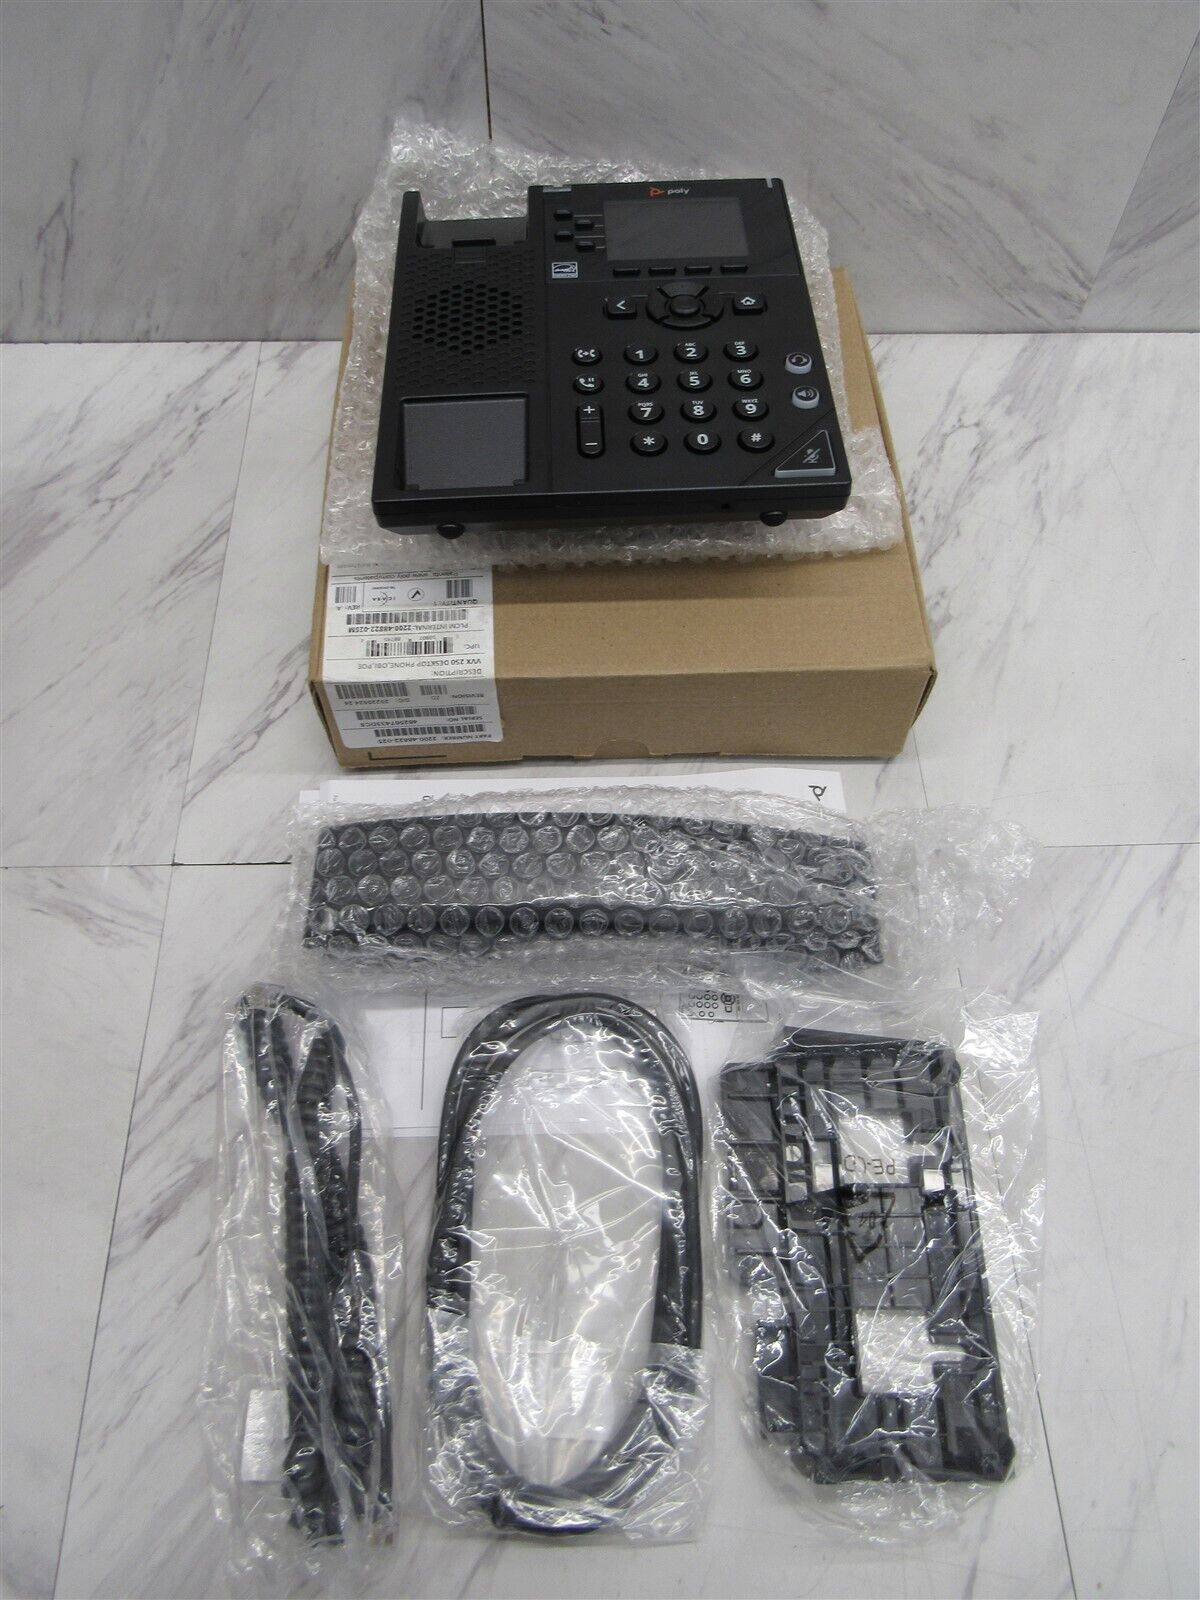 NEW Polycom VVX 250 4-Line Gigabit IP Phone 2200-48822-025 VVX250